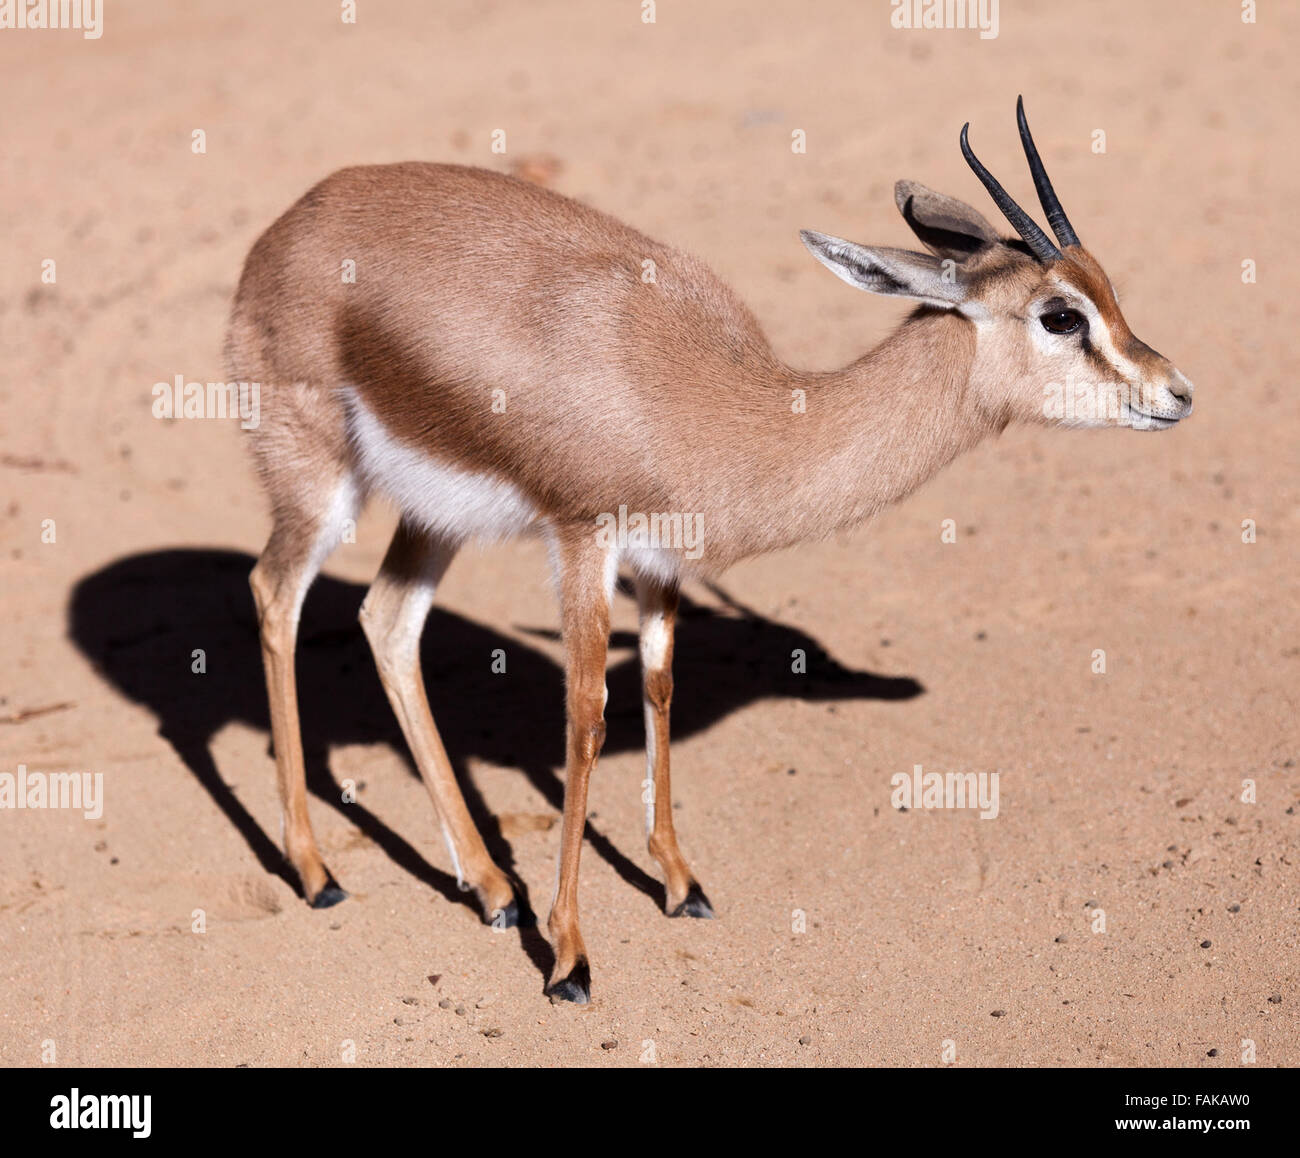 dorcas gazelle (Gazella dorcas) on sand Stock Photo